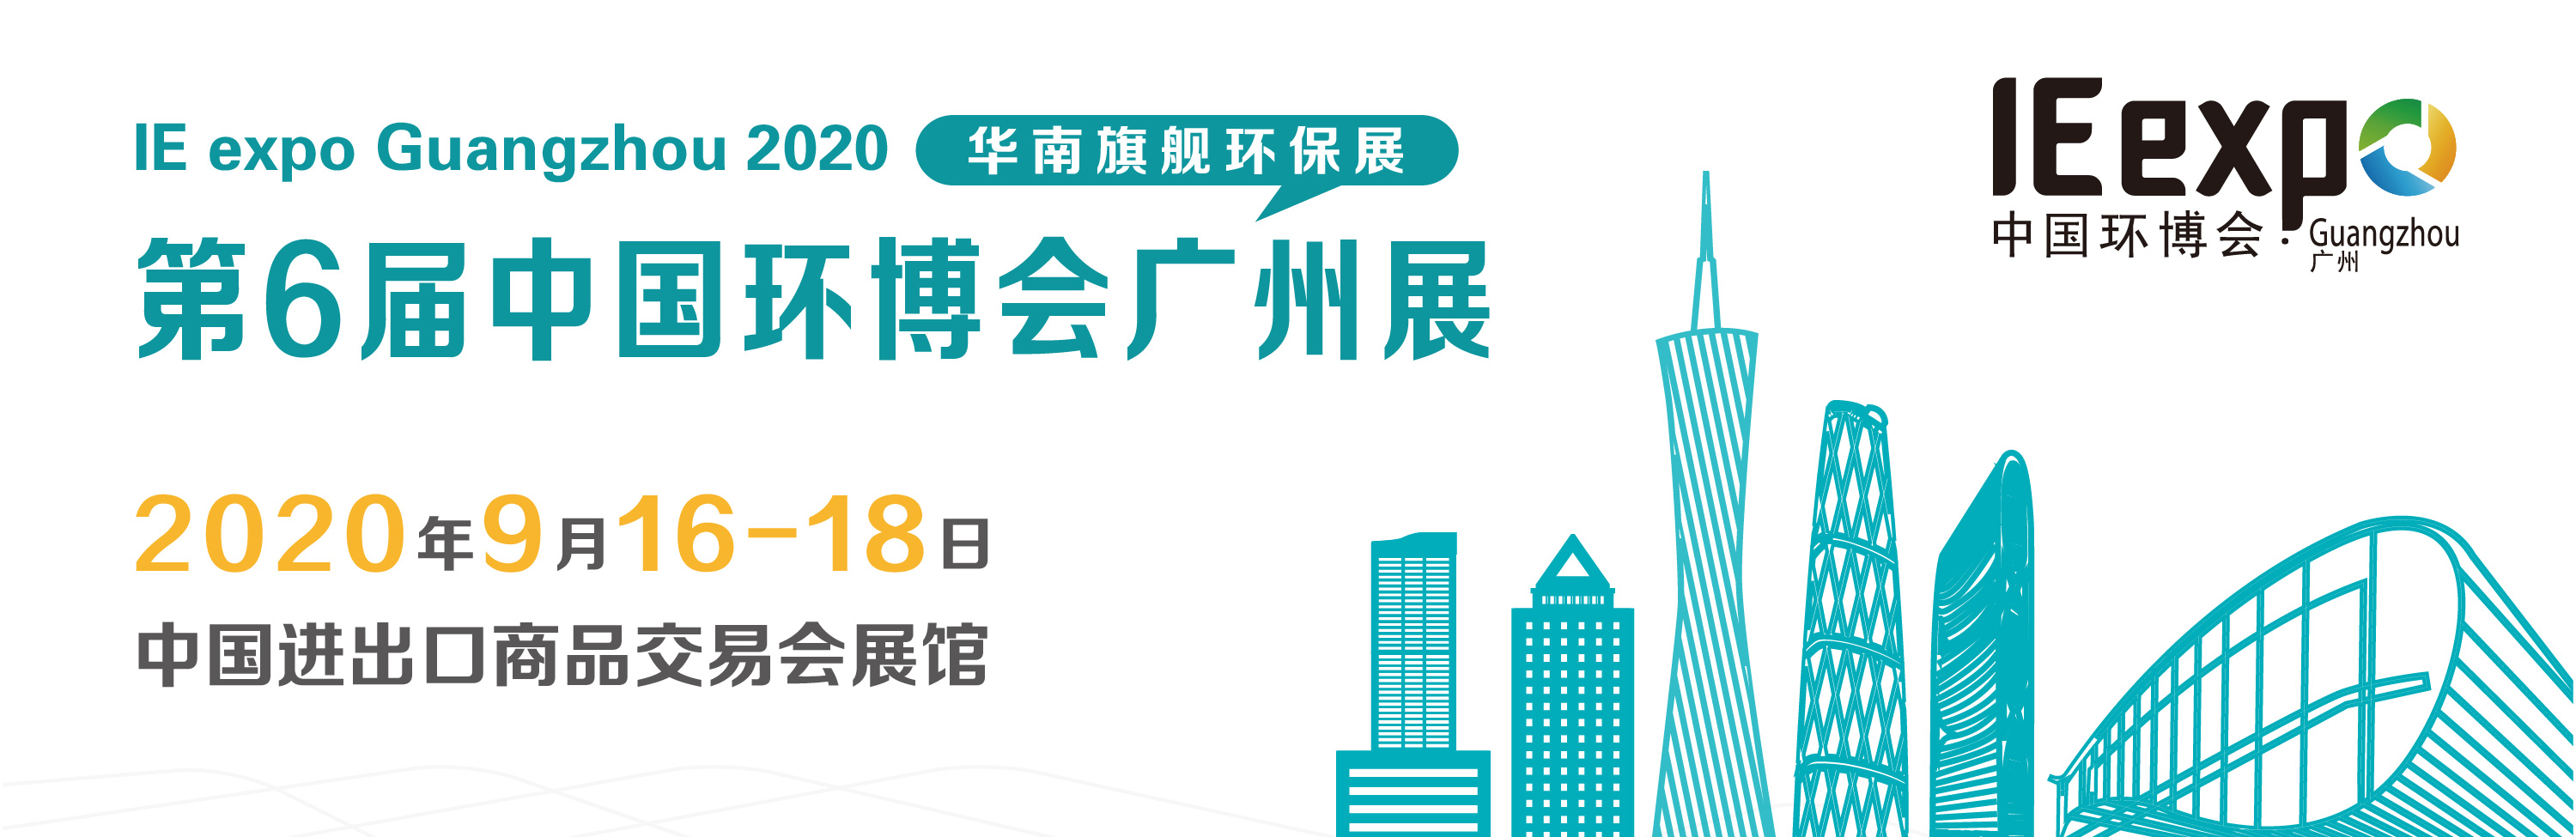 2020第6届中国（广州）环博会IE expo